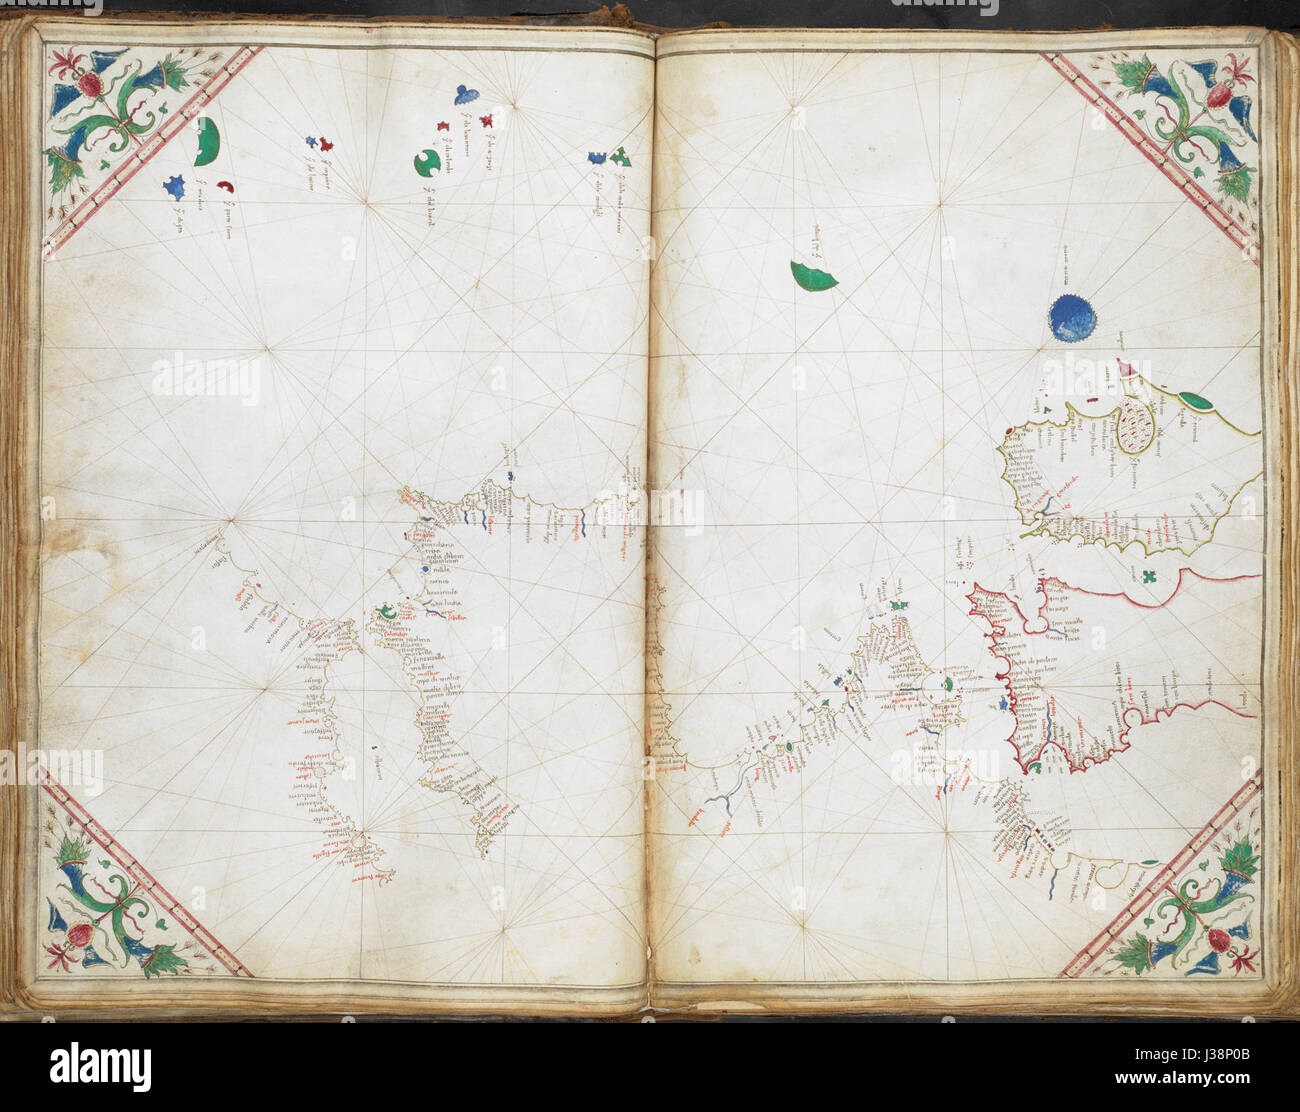 Grafico delle coste di Irlanda, la maggior parte della Gran Bretagna, Francia, Portogallo e lo Stretto di Gibilterra, con delle Azzorre e di Madera Cornaro Atlas (Egerton MS 73, f.14r) Foto Stock